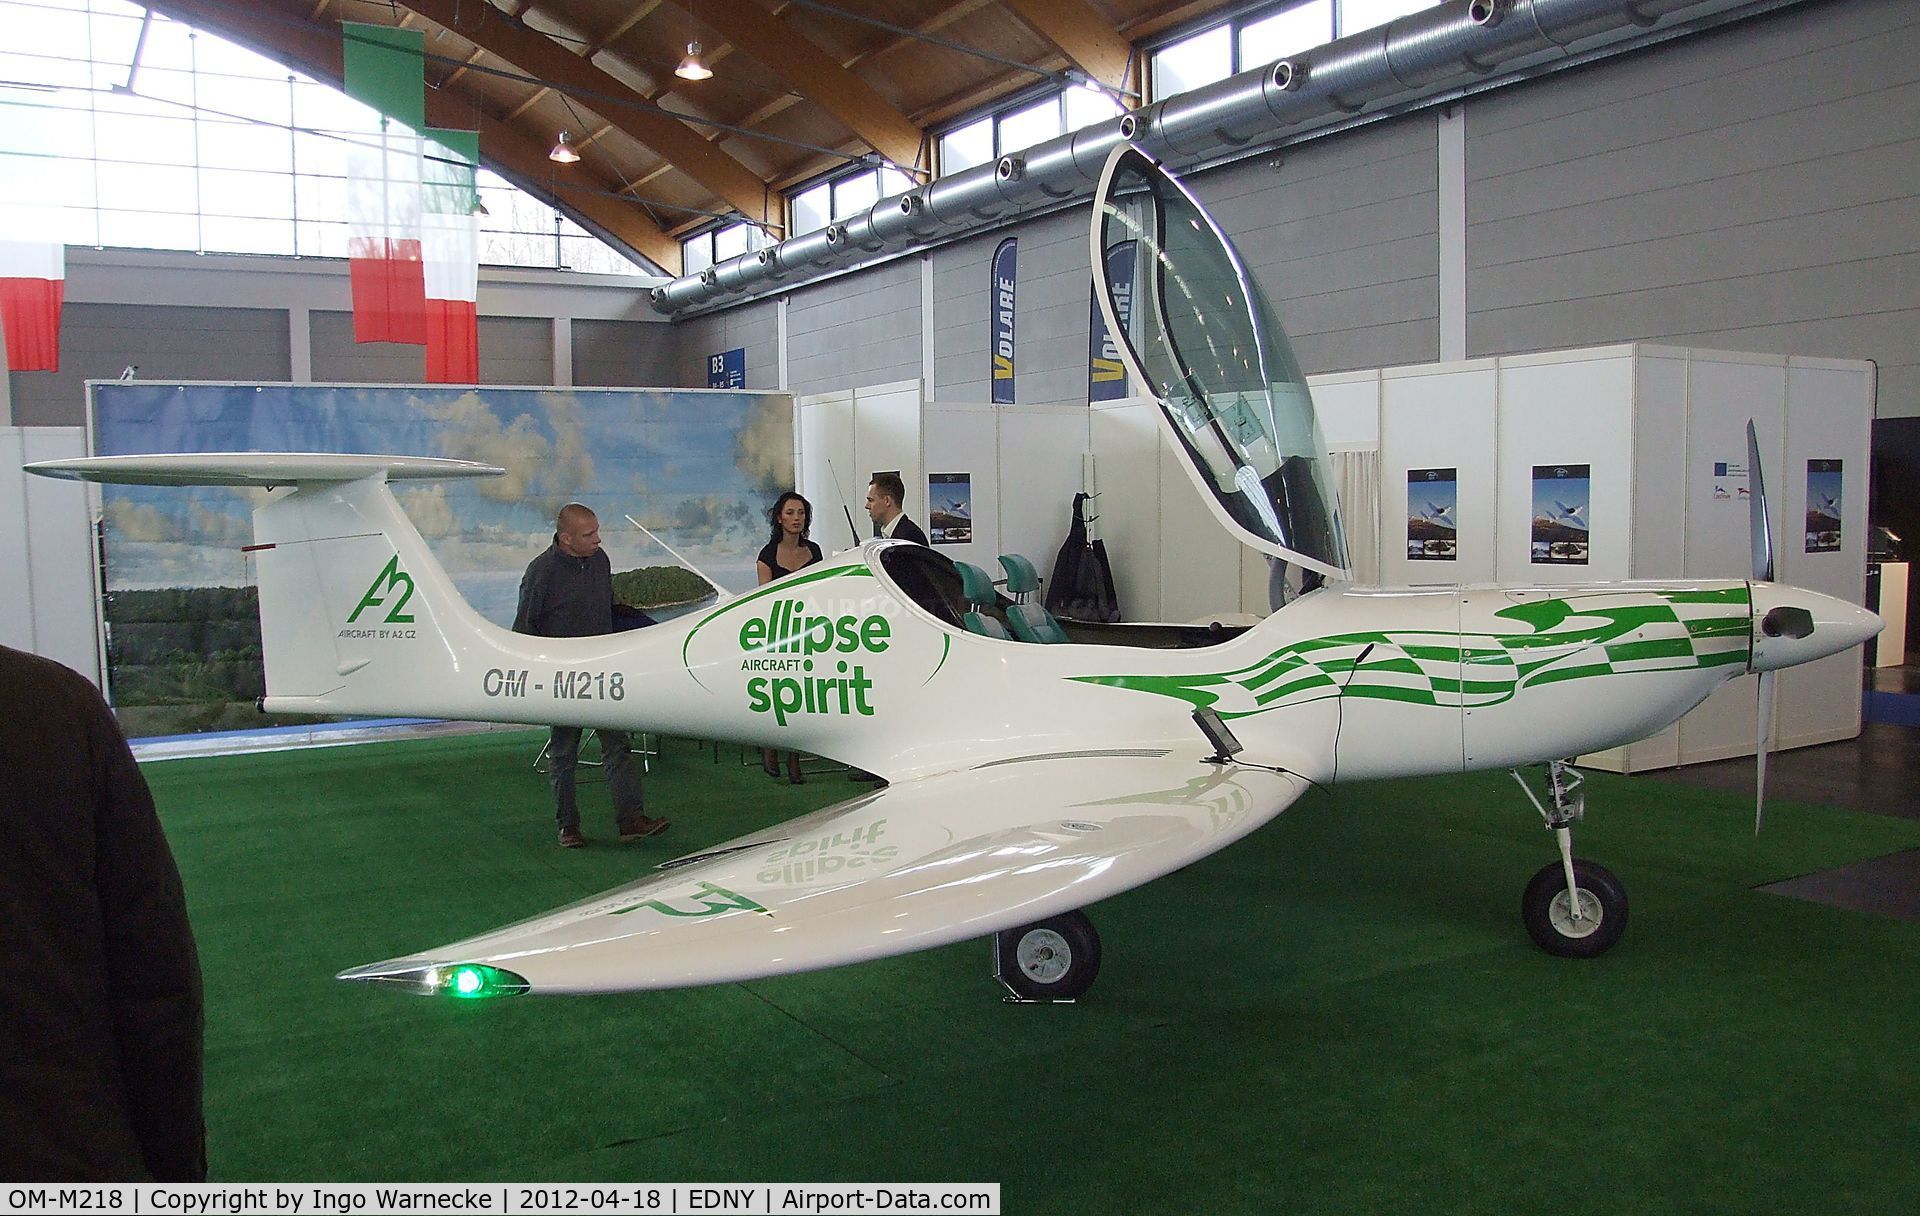 OM-M218, Ellipse Spirit C/N 002, Ellipse Spirit at the AERO 2012, Friedrichshafen